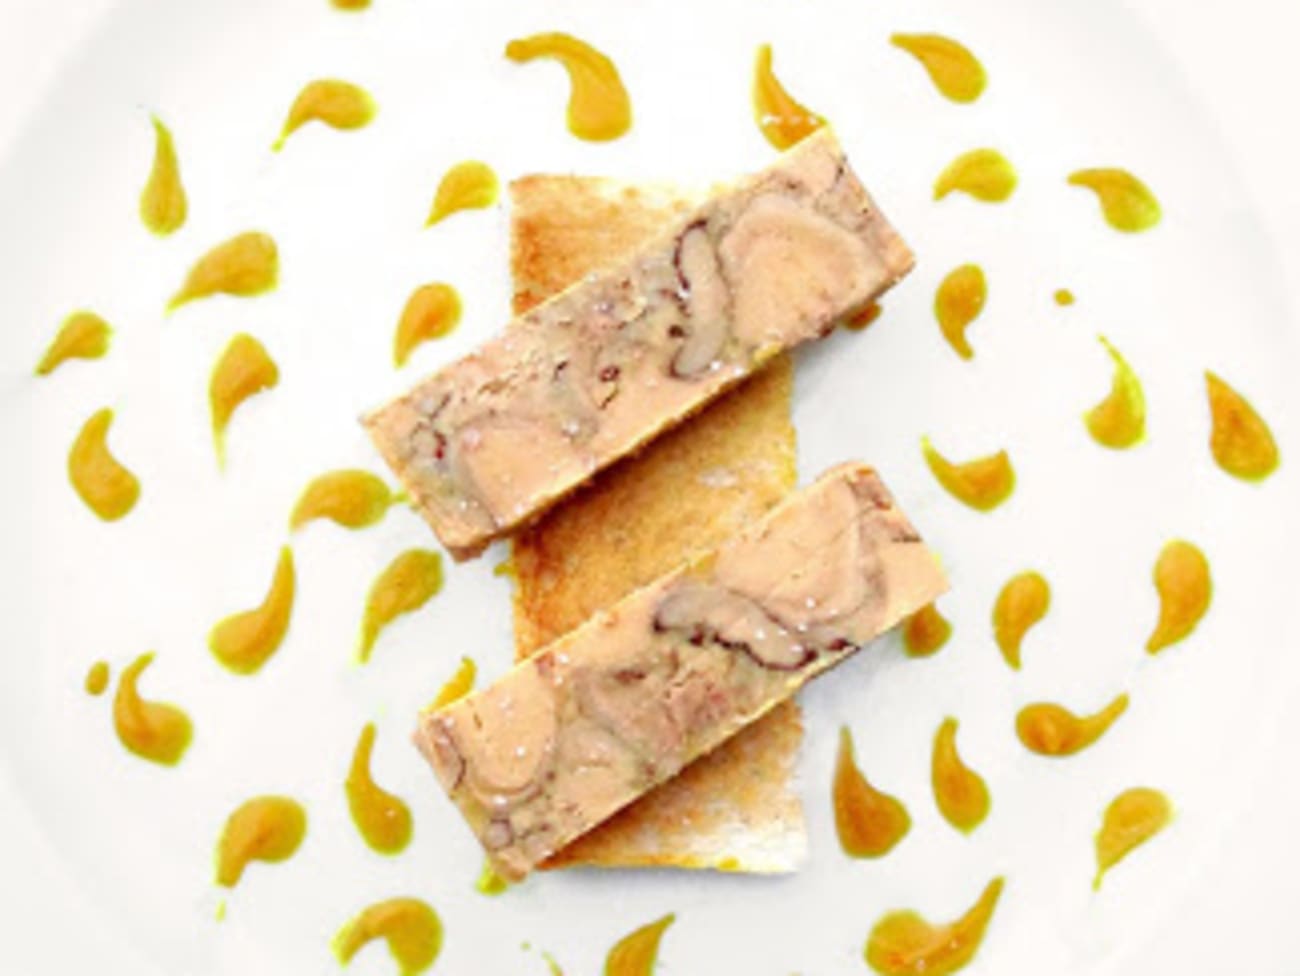 Comment préparer une terrine de foie gras à la mangue : recette